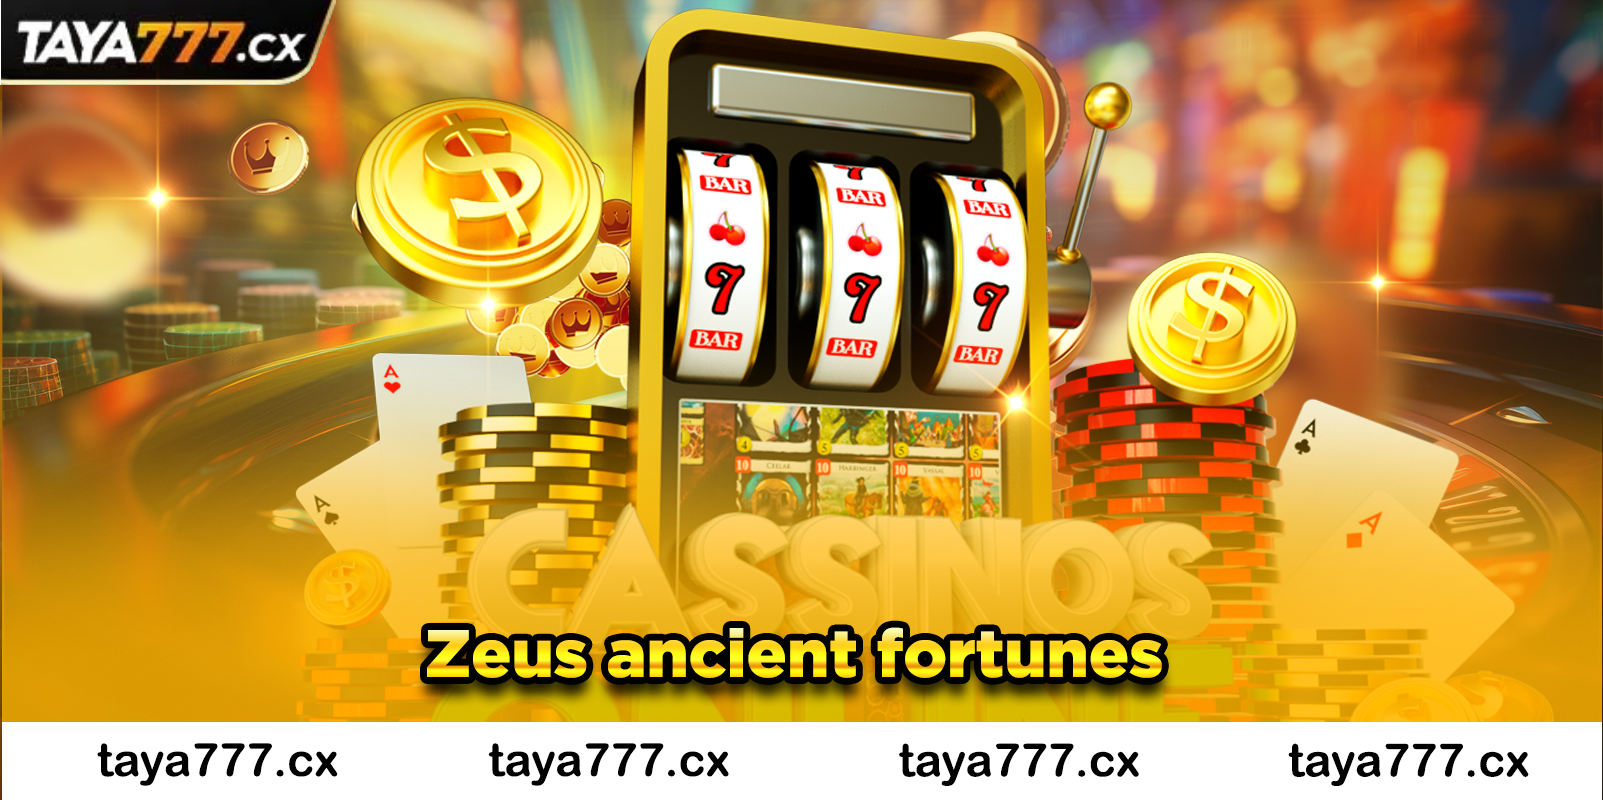 Zeus ancient fortunes